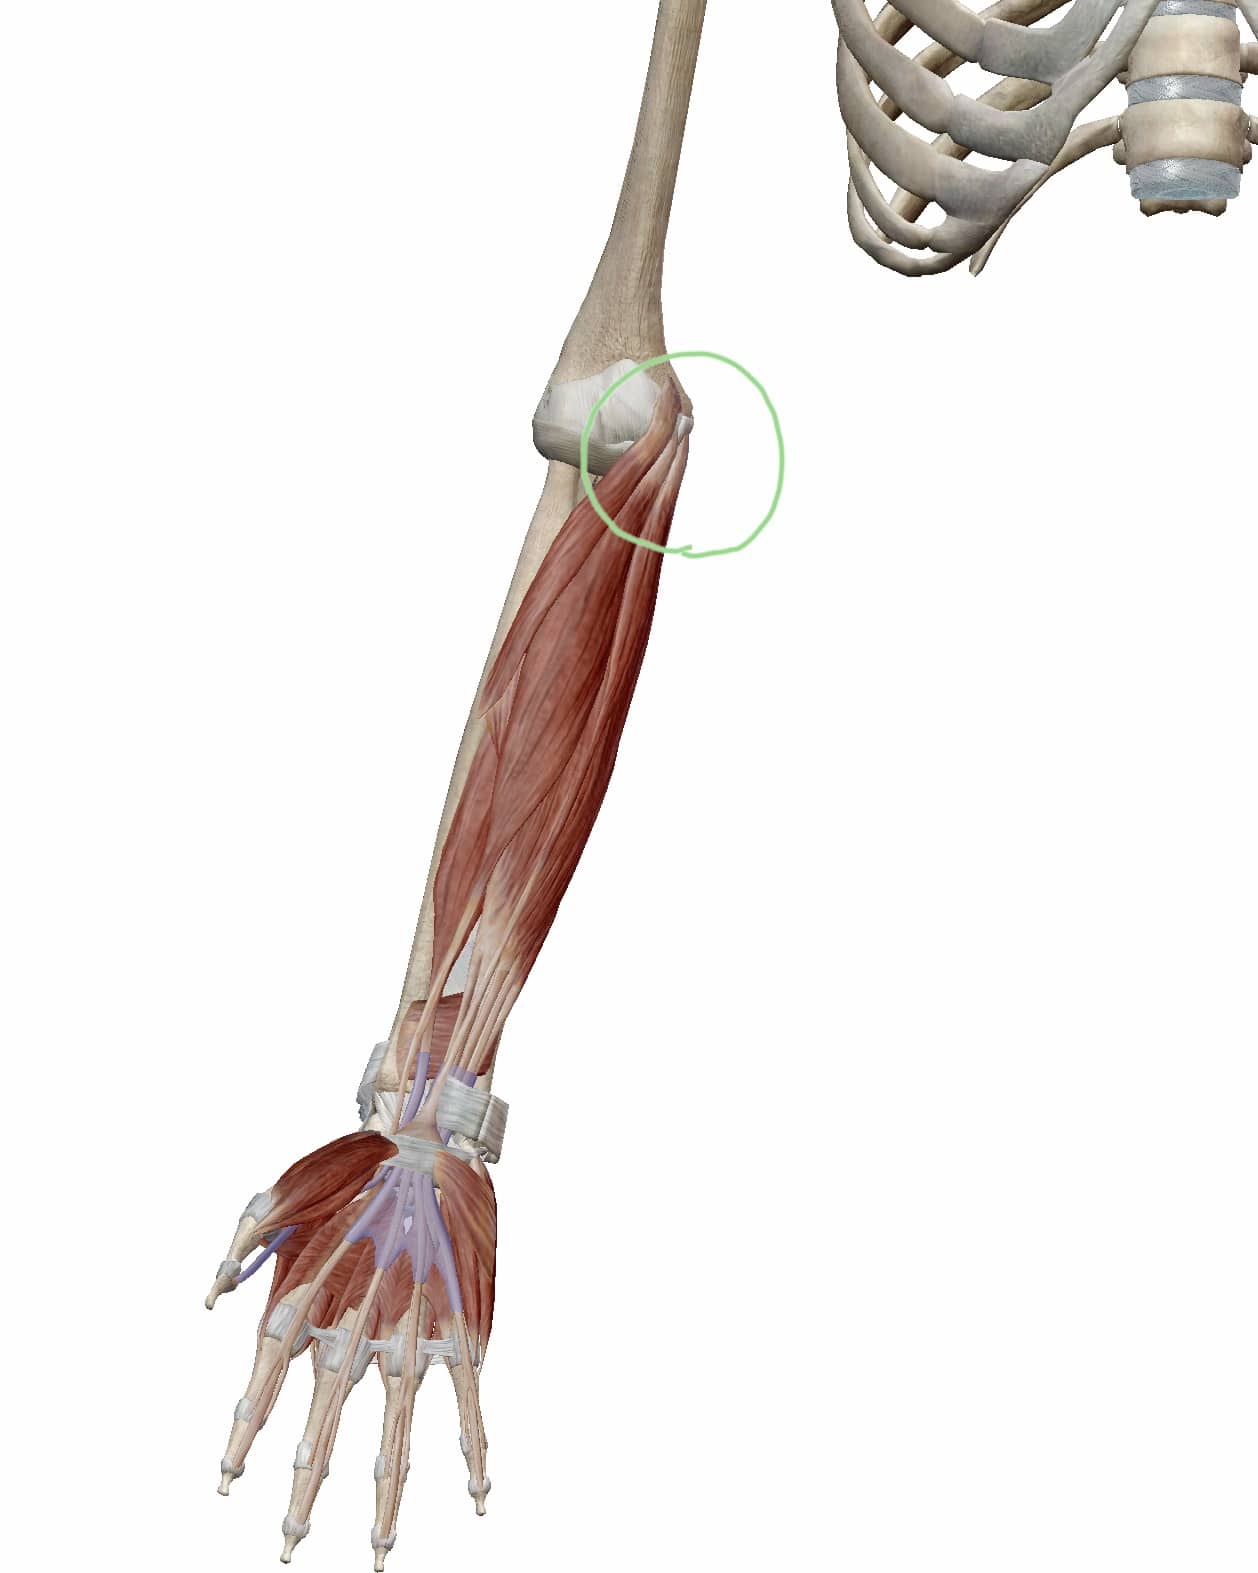 ゴルフ肘（上腕骨内側上顆炎）と関係する筋肉の位置関係の図